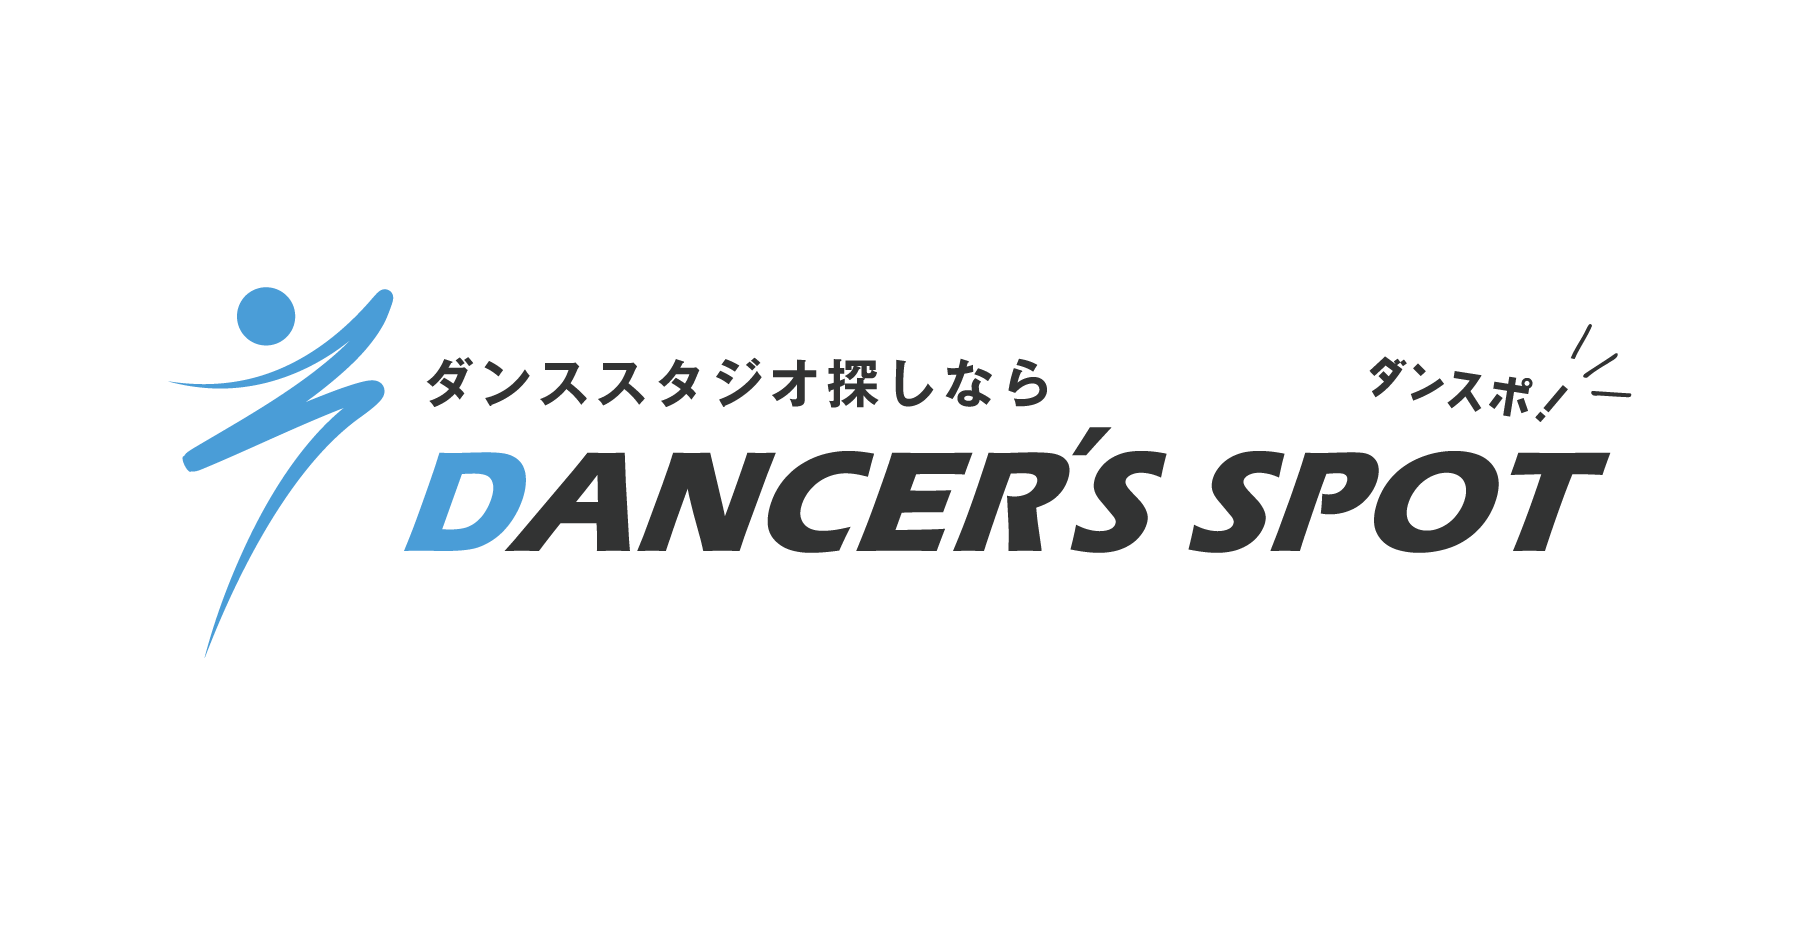 DANCER'S SPOT